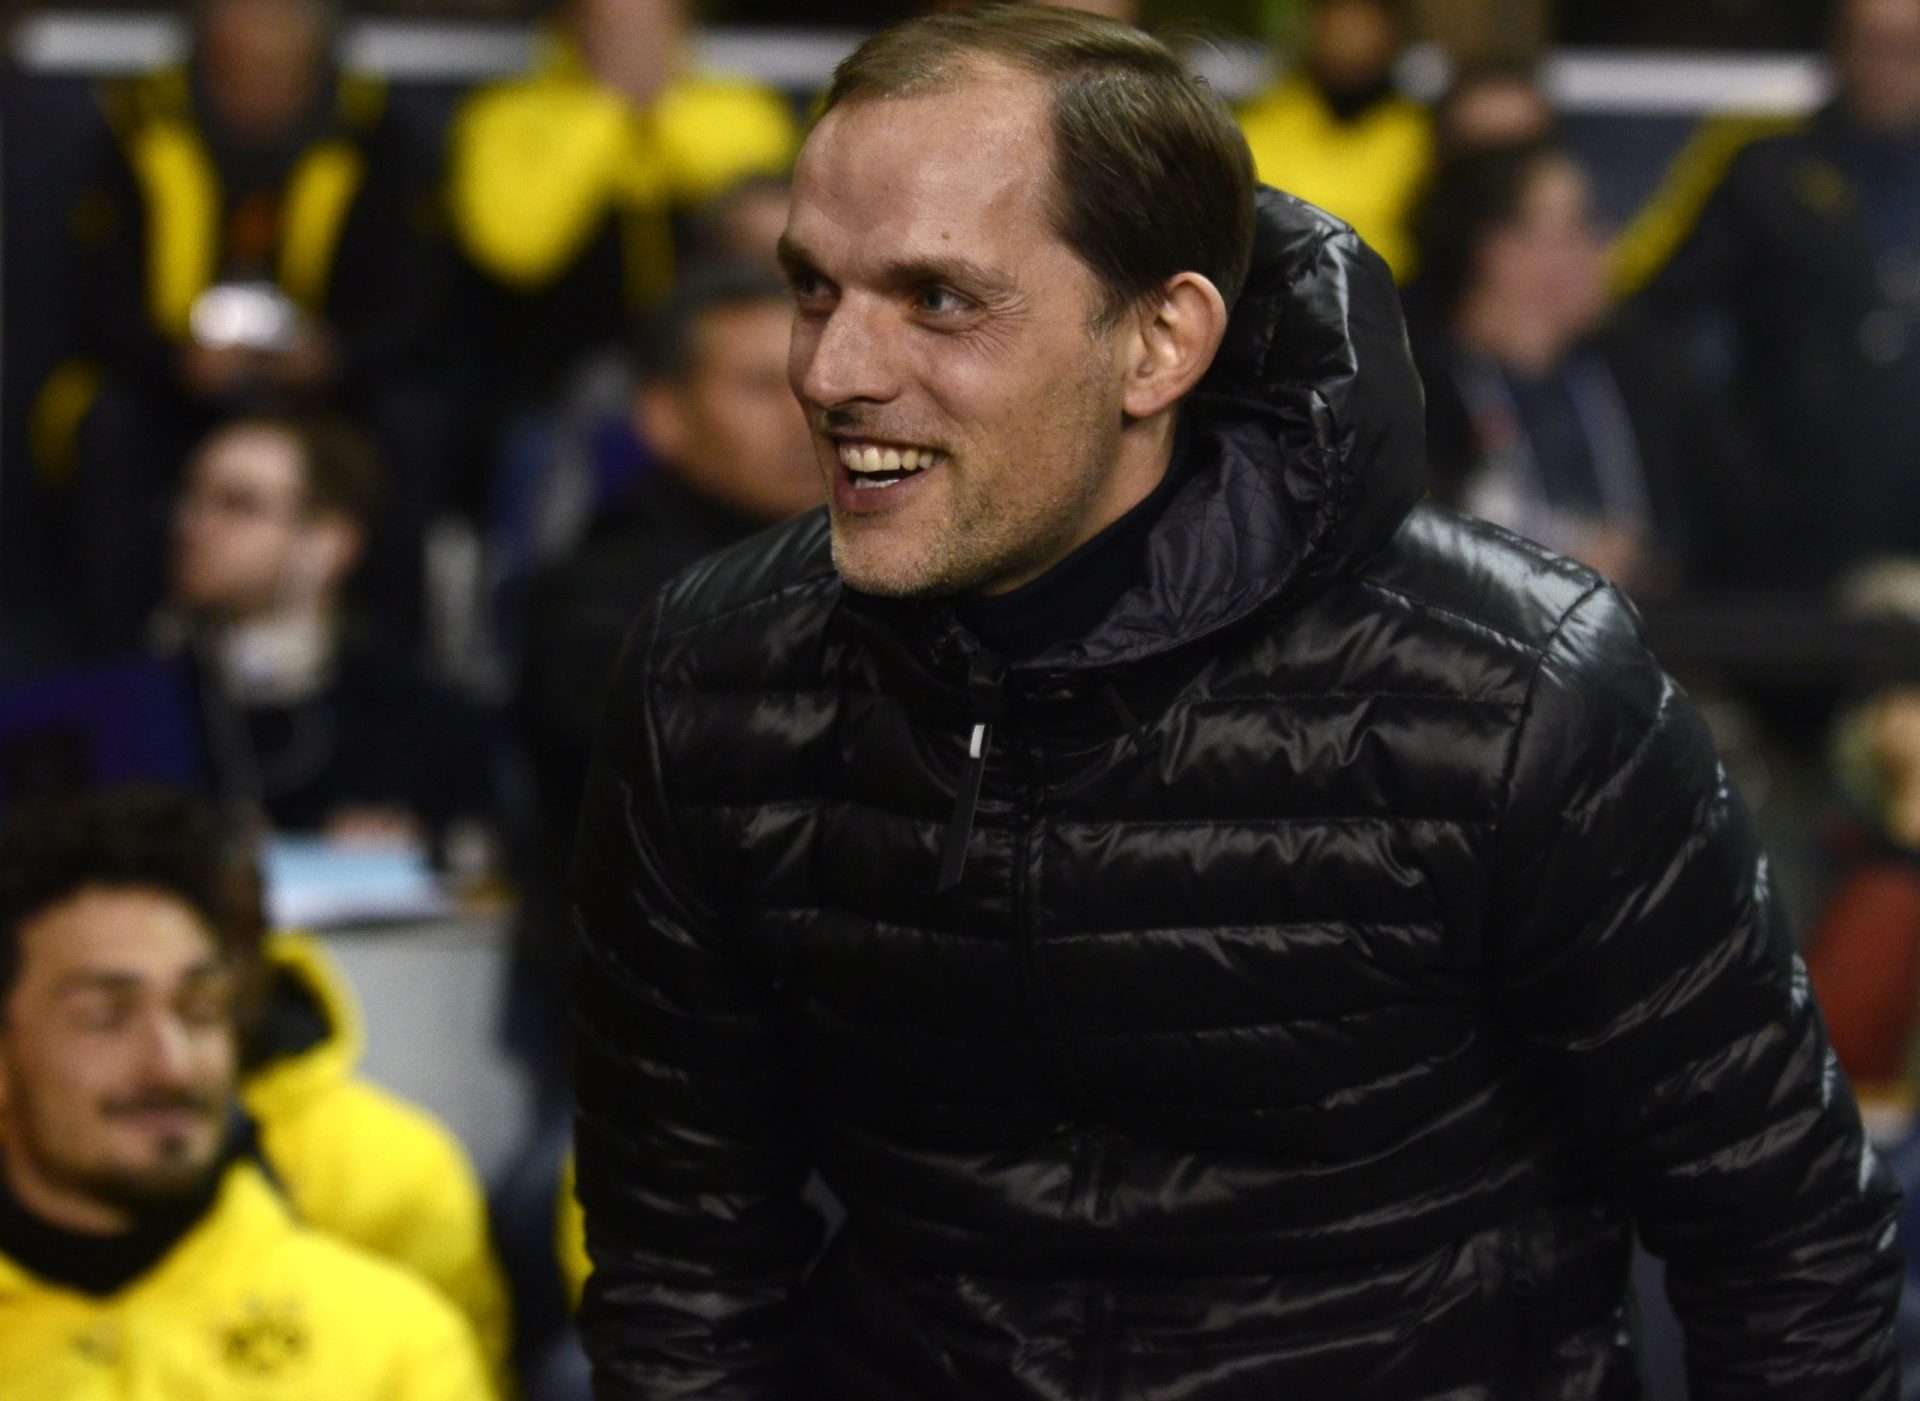 Frase polémica afastou treinador do Dortmund